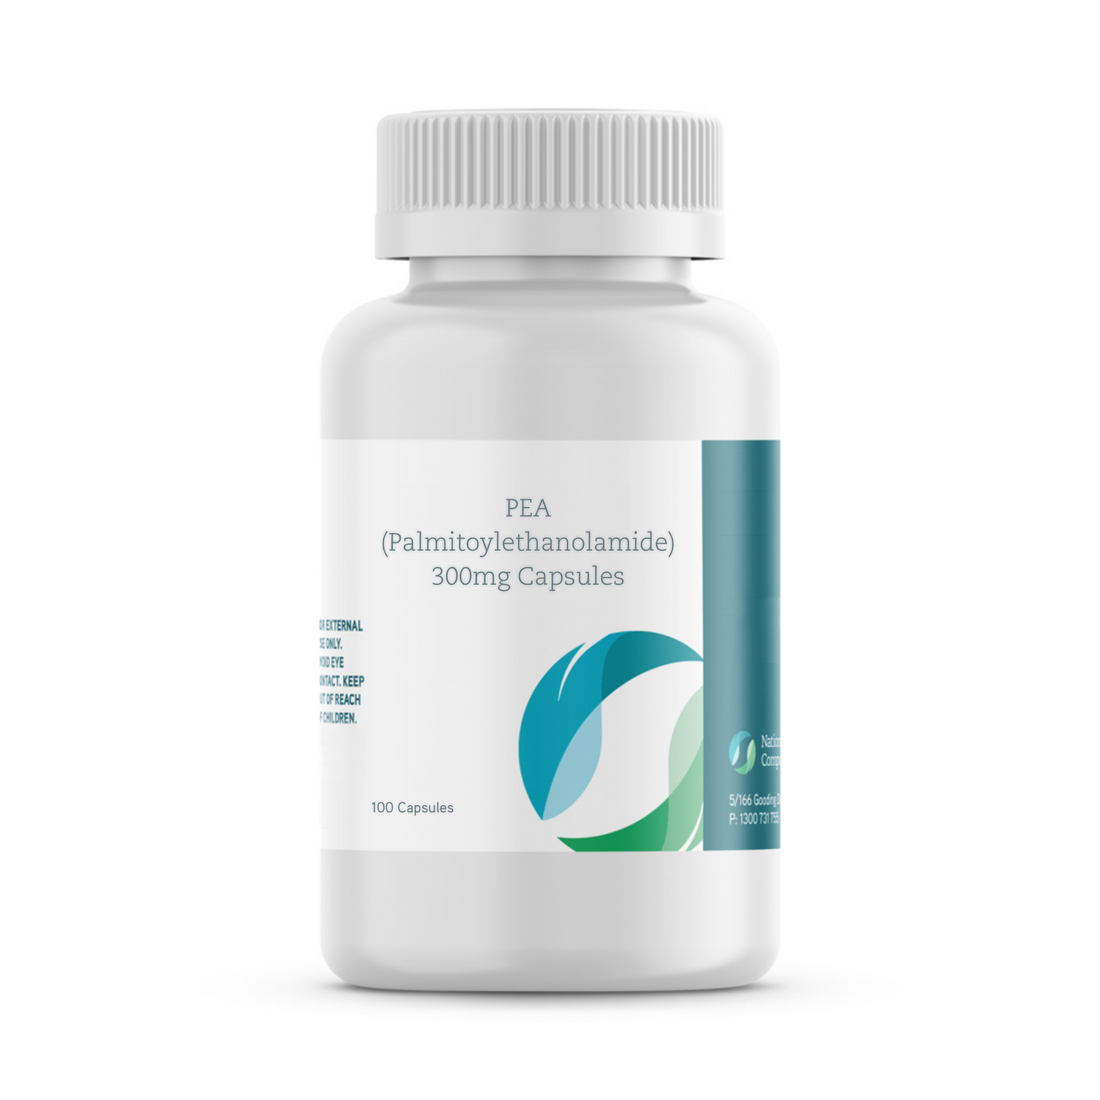 PEA (Palmitoylethanolamide) 300mg Capsules